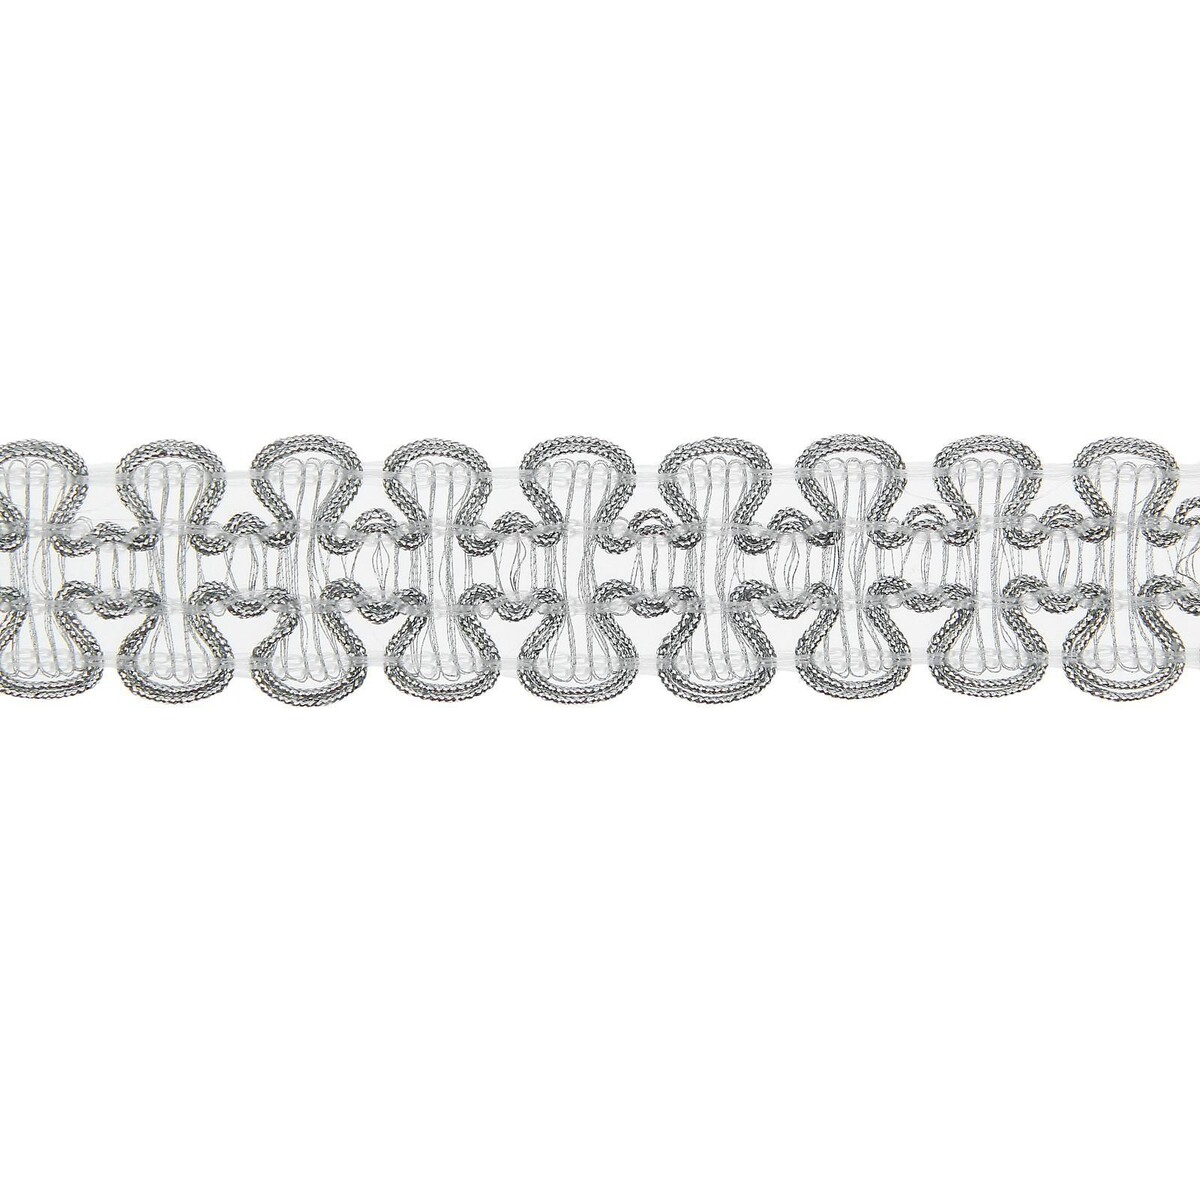 Тесьма плетеная серебряная в рулоне 20 метров калька чертежная под карандаш ширина 420 мм в рулоне 20 метров 40 г м² в пп пленке